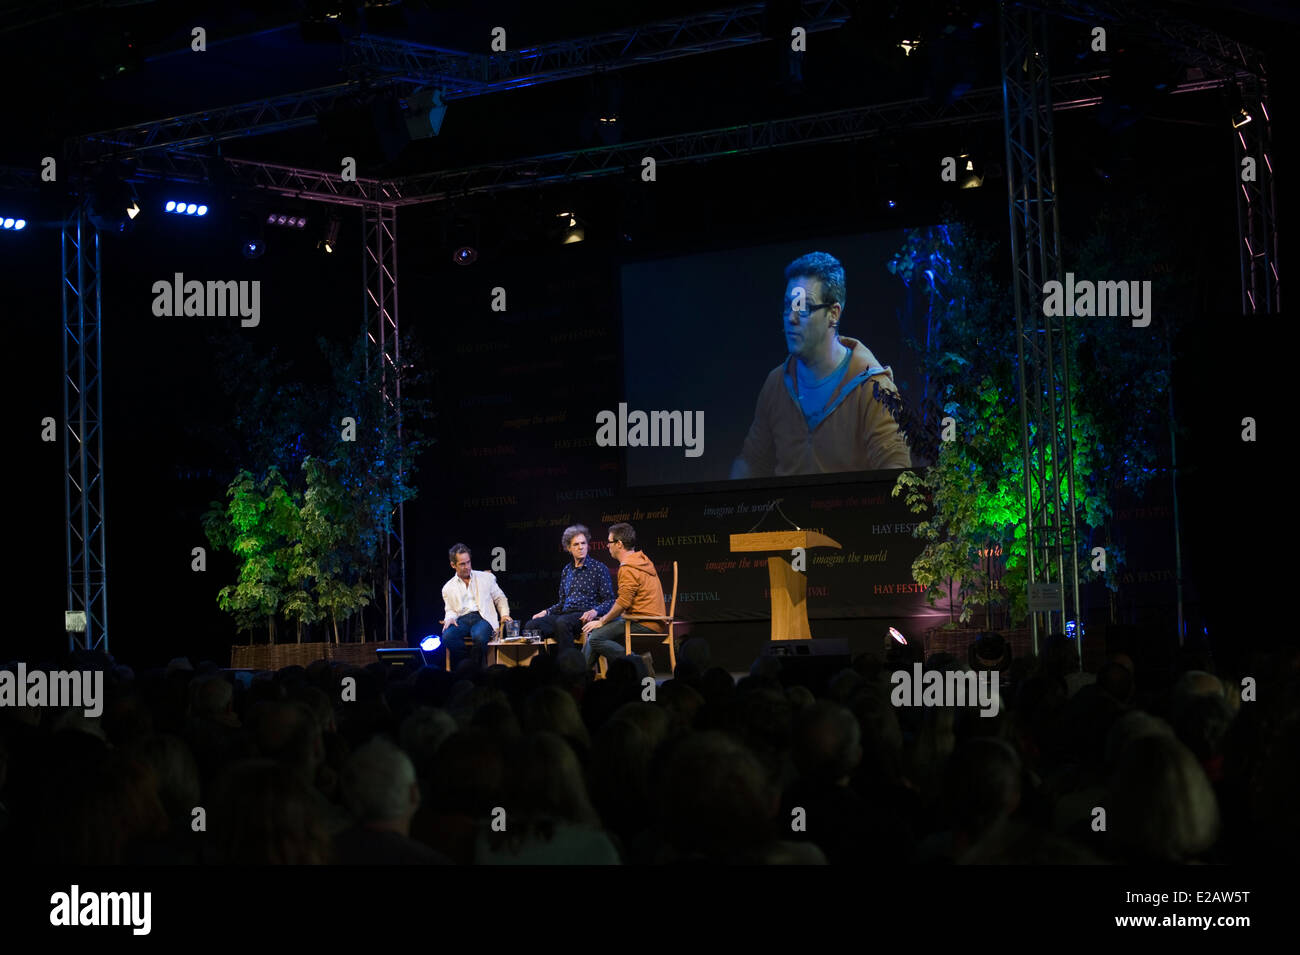 Comédie de BBC TV Rev discuté sur scène à Hay Festival 2014 (l-r) Tom Hollander, Jon Canter & James Wood Banque D'Images